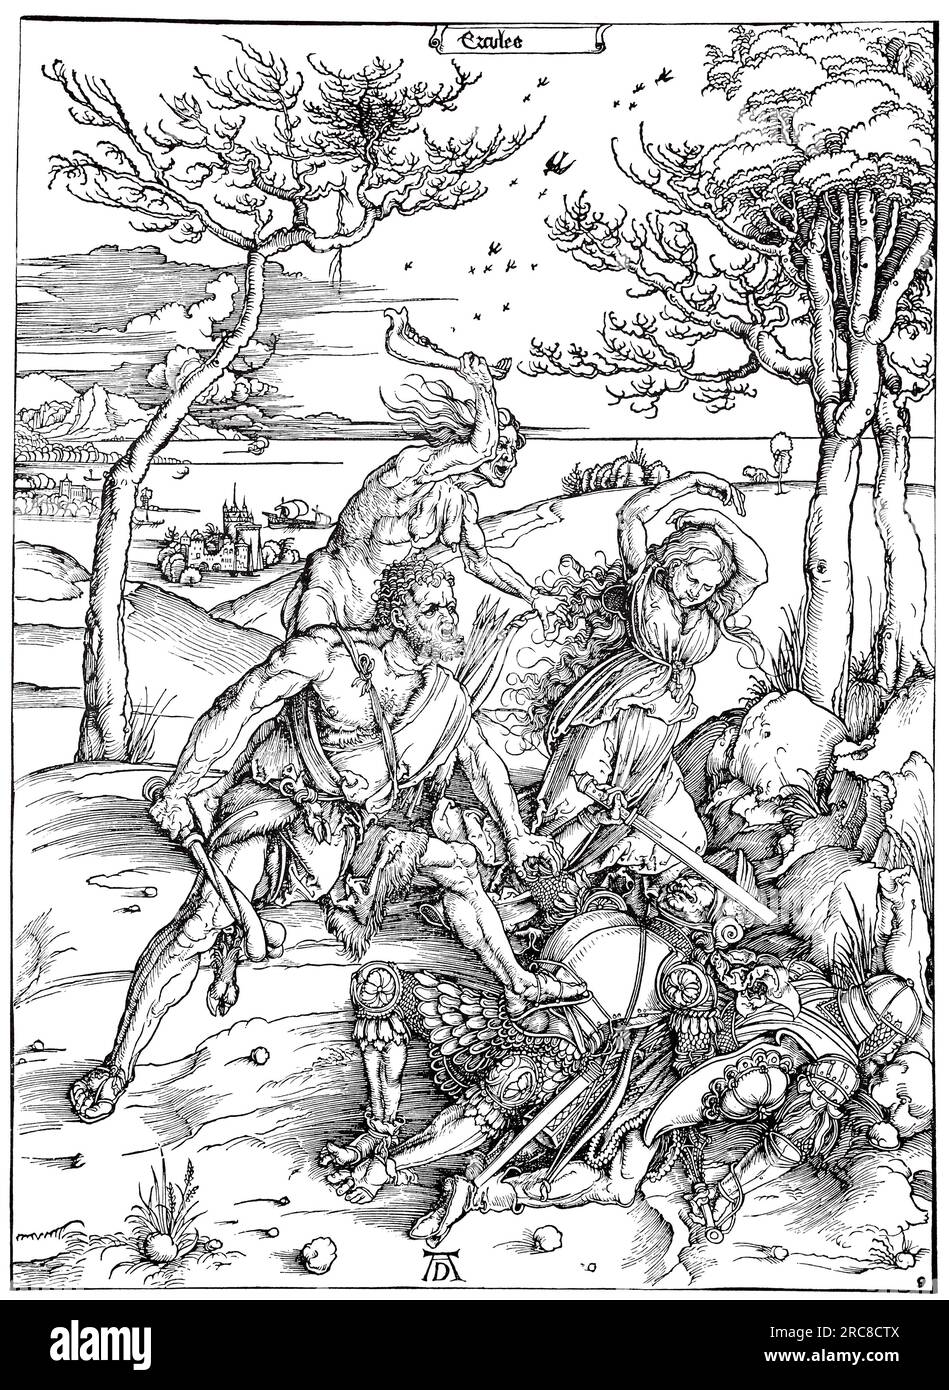 Hercules, tagliato in legno da Albrecht Dürer, riproduzione storica, digitale migliorata di un vecchio taglio di legno Foto Stock